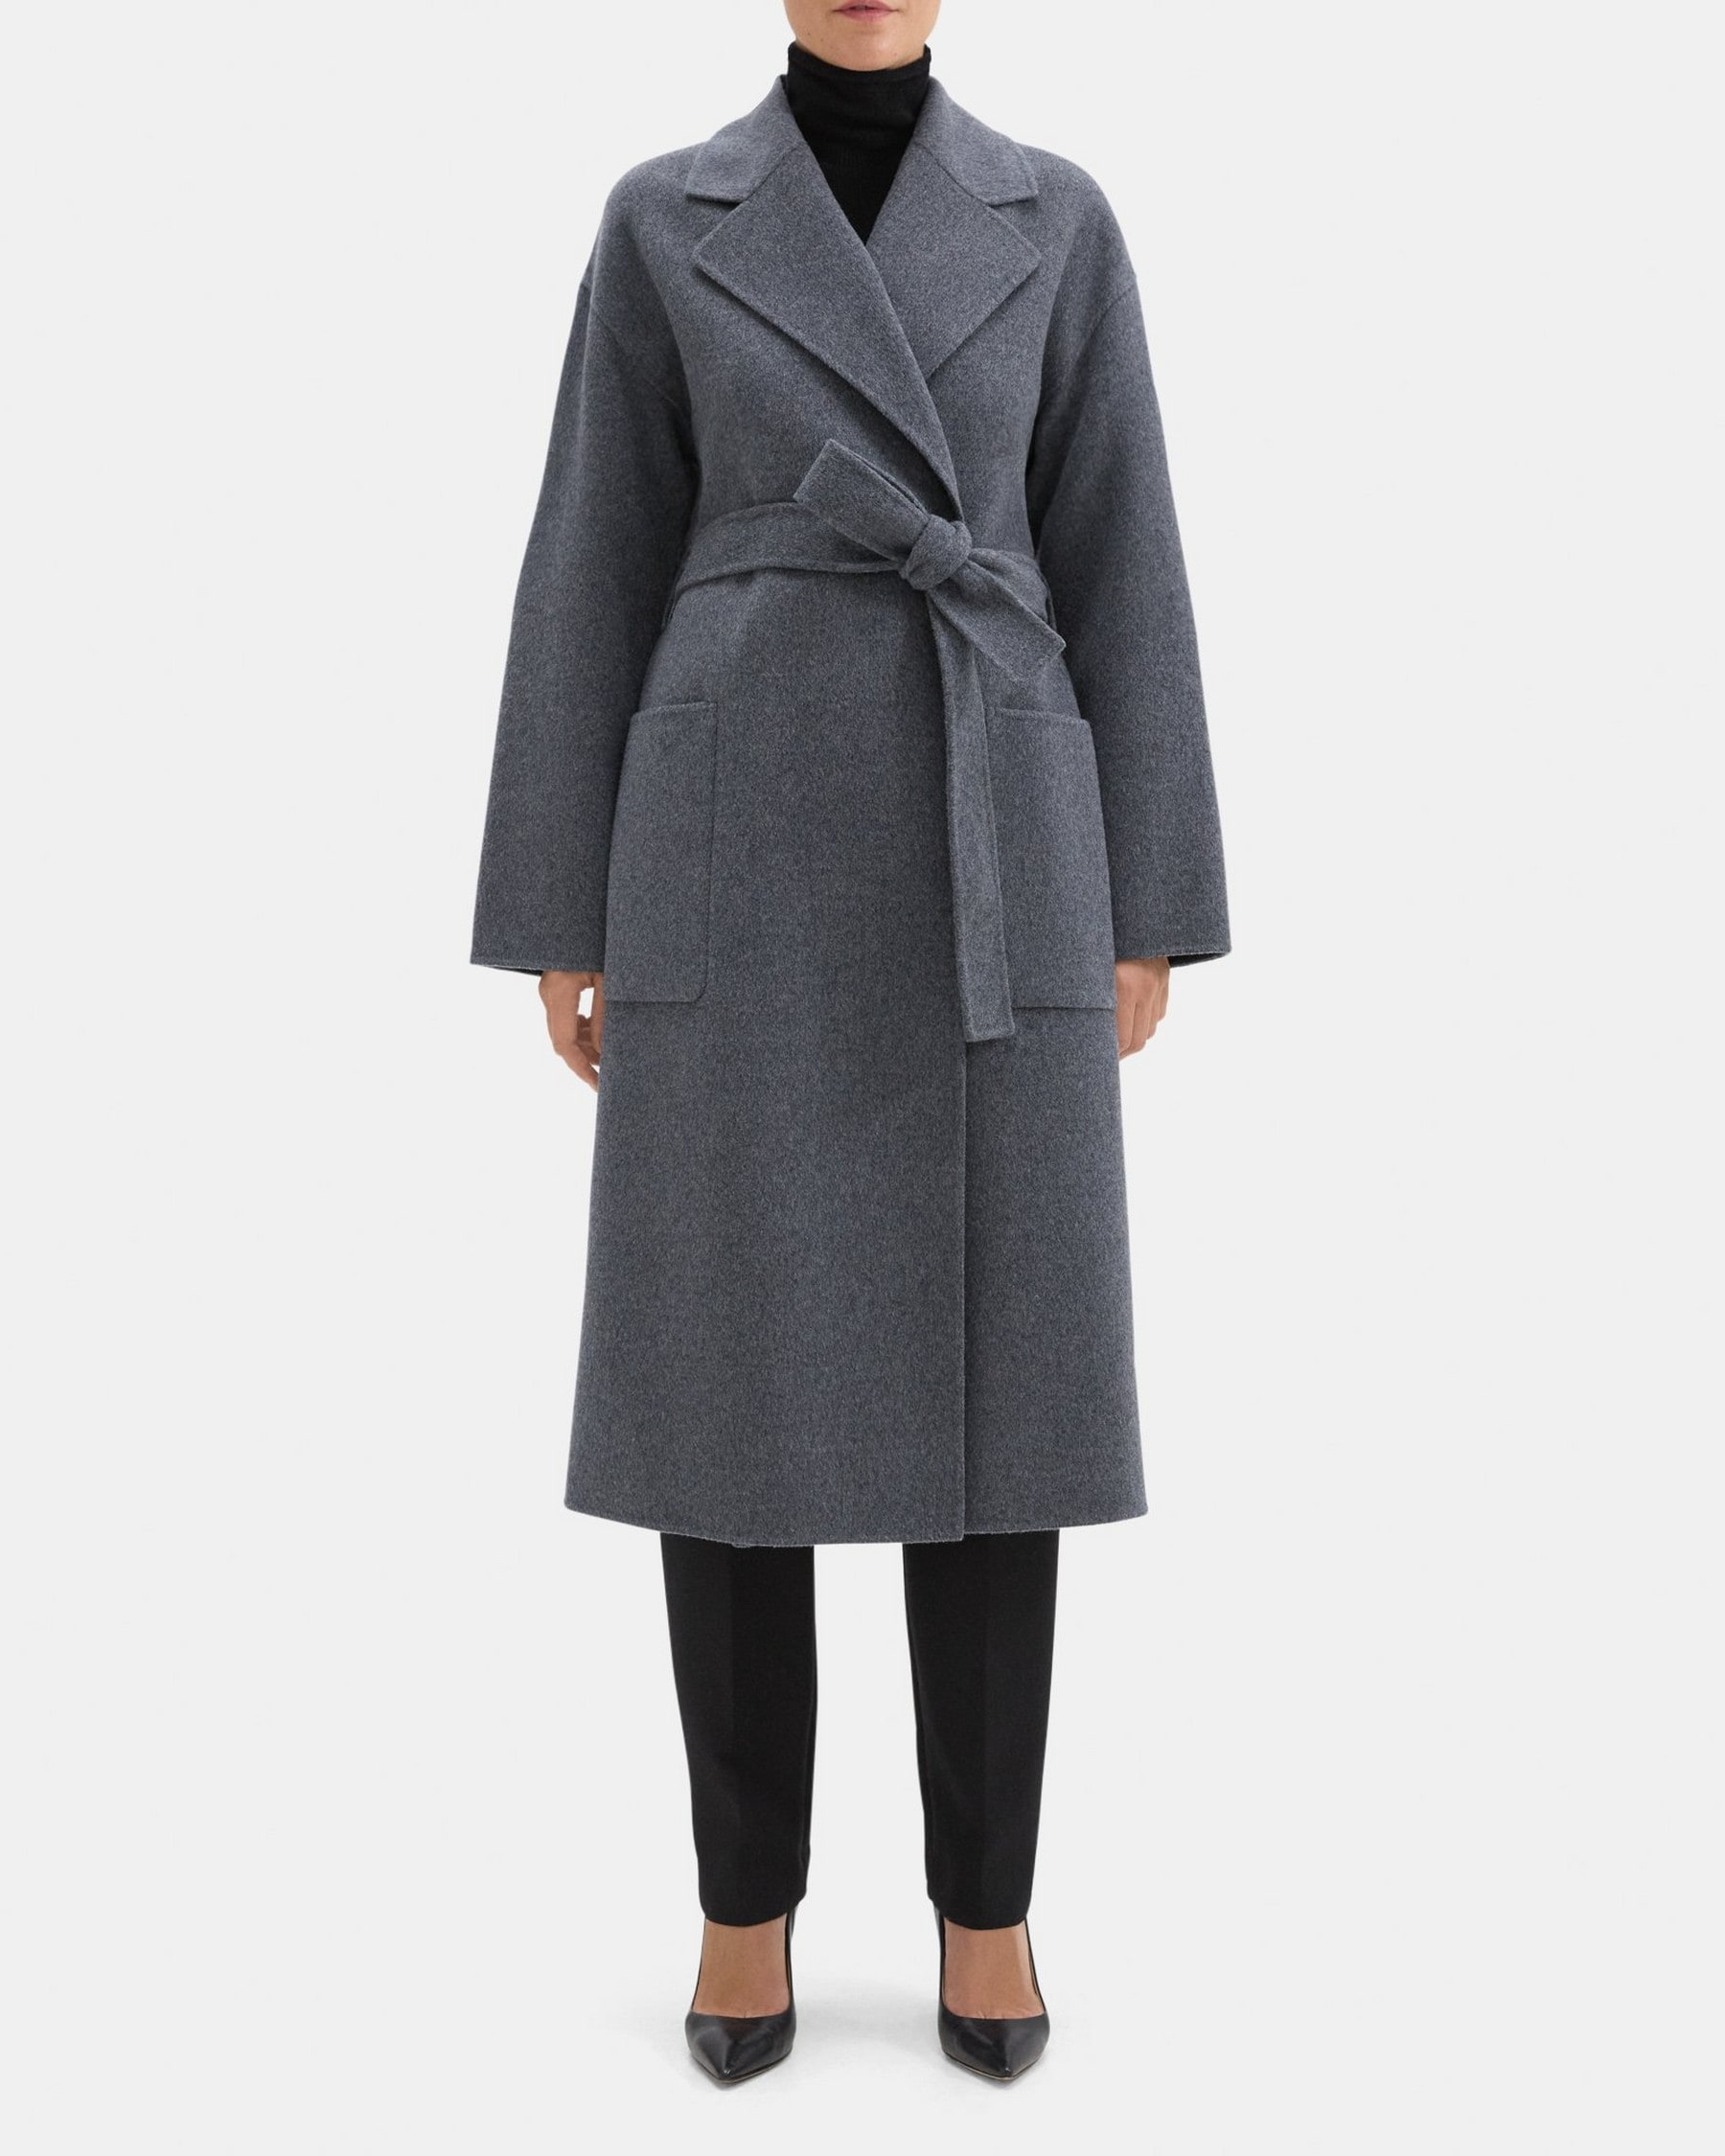 띠어리 Theory Robe Coat in Double-Face Wool-Cashmere,DARK GREY MELANGE